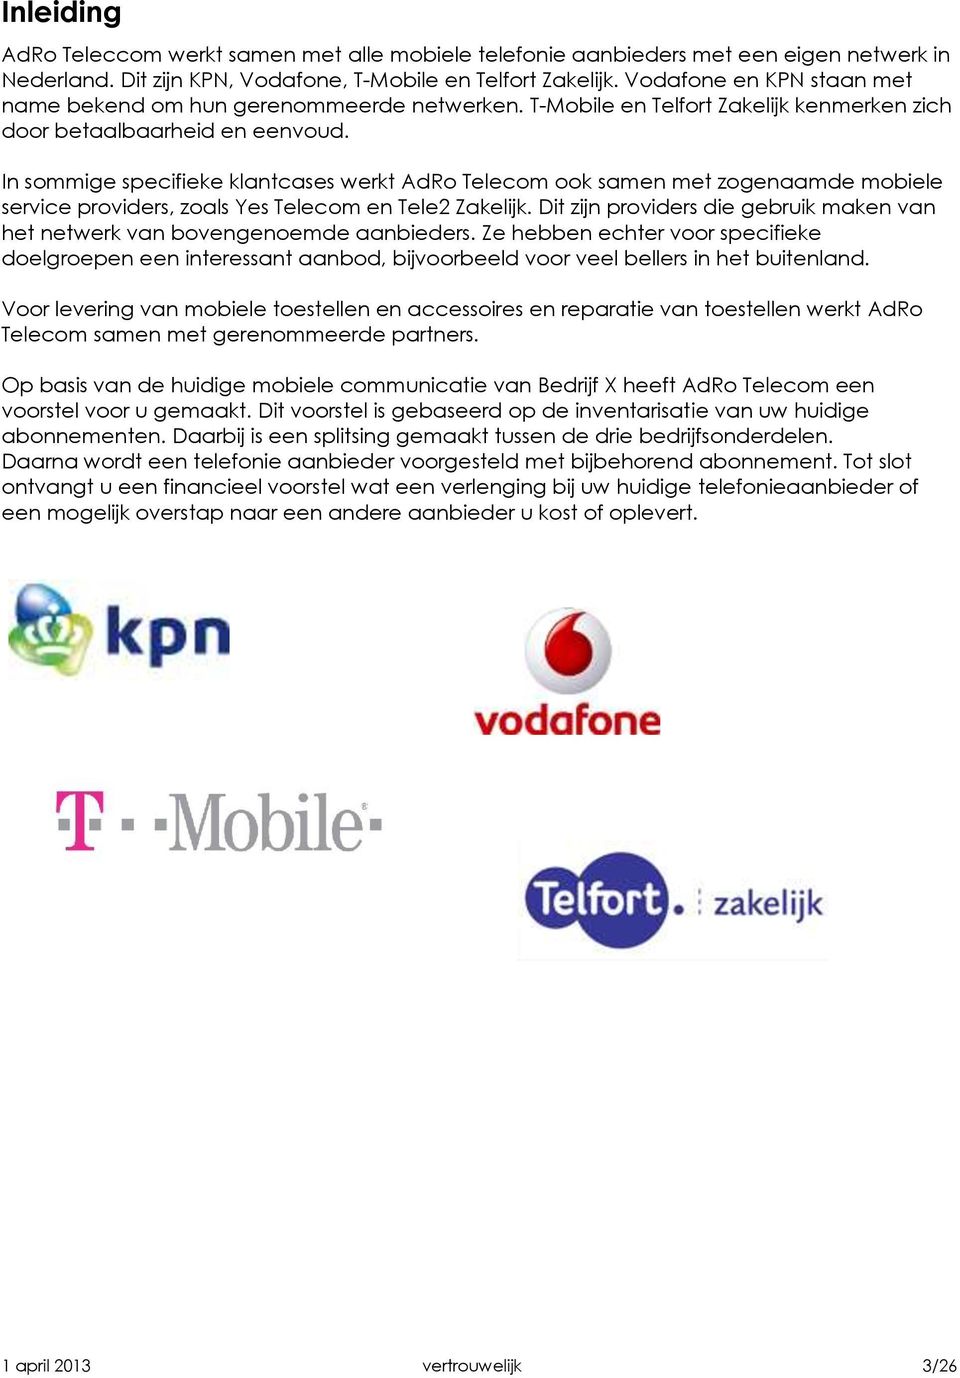 In sommige specifieke klantcases werkt AdRo Telecom ook samen met zogenaamde mobiele service providers, zoals Yes Telecom en Tele2 Zakelijk.